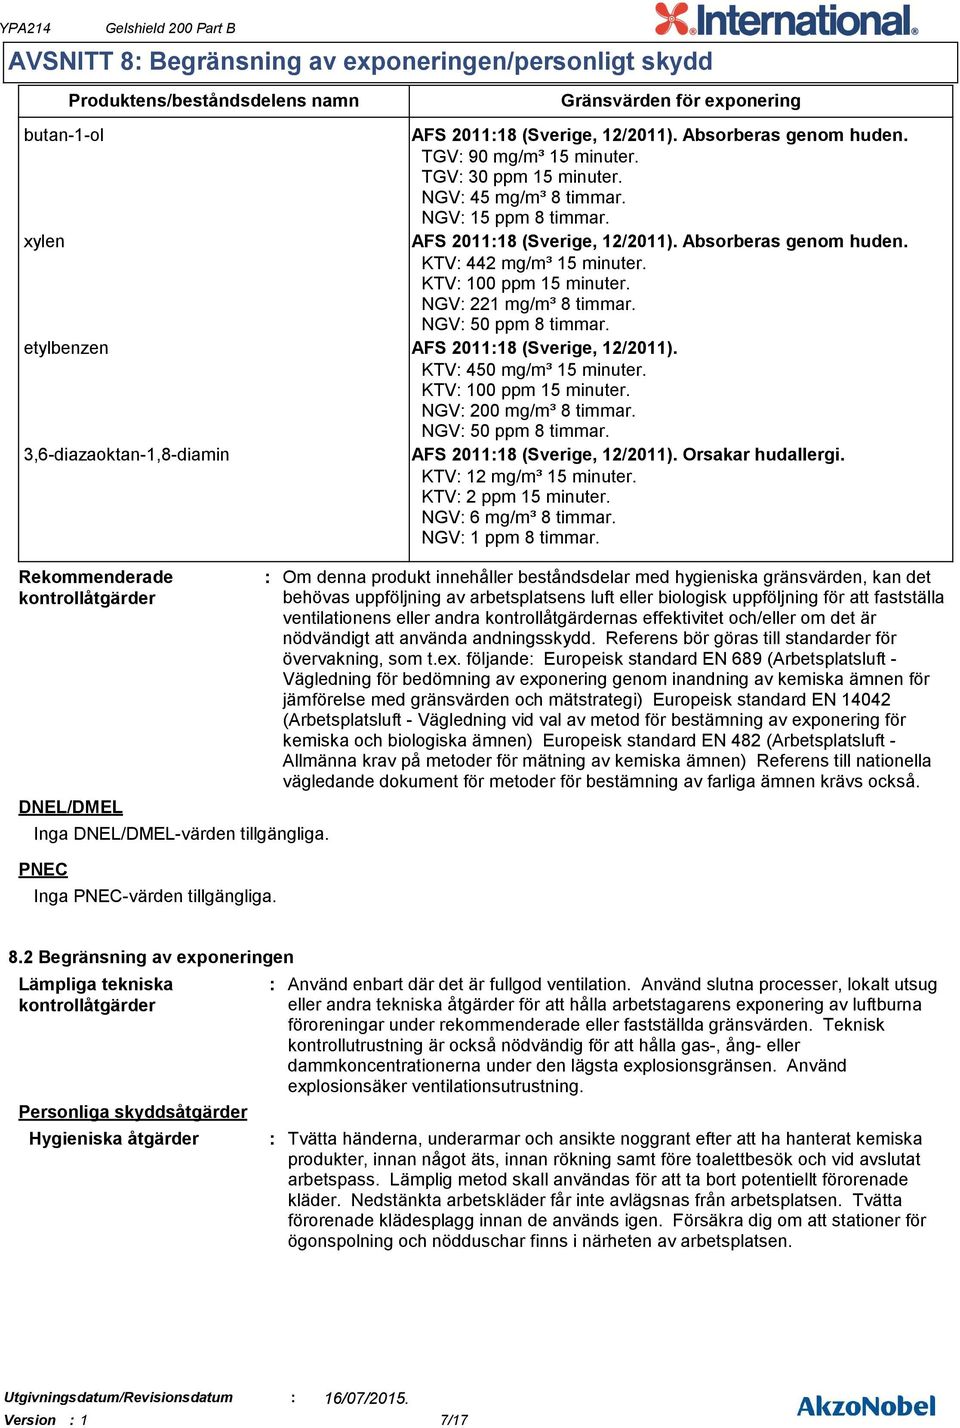 xylen AFS 201118 (Sverige, 12/2011). Absorberas genom huden. KTV 442 mg/m³ 15 minuter. KTV 100 ppm 15 minuter. NGV 221 mg/m³ 8 timmar. NGV 50 ppm 8 timmar. etylbenzen AFS 201118 (Sverige, 12/2011).